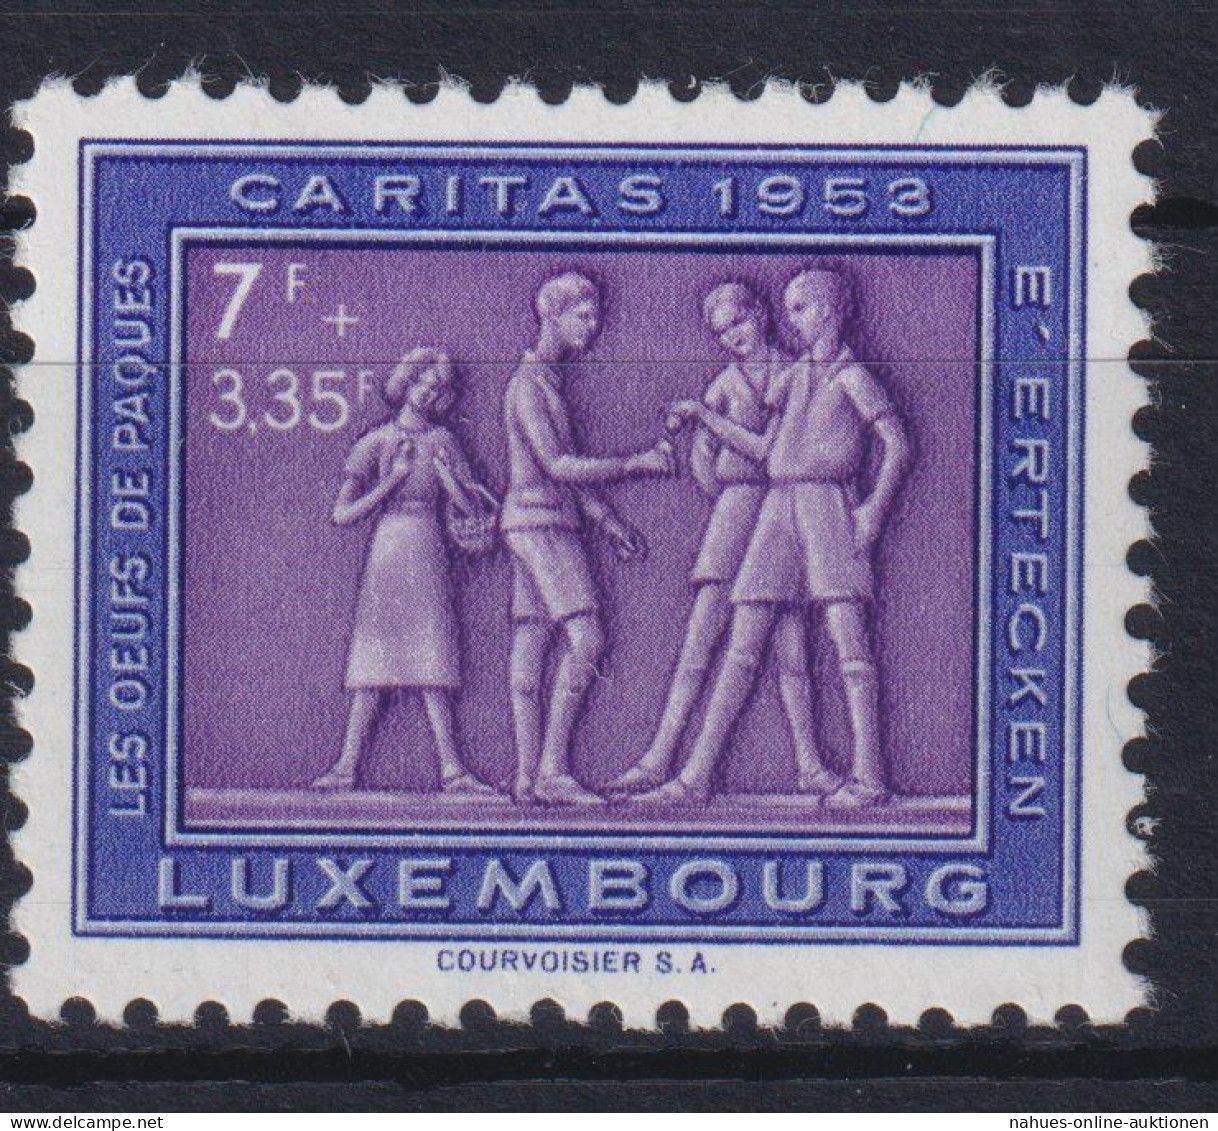 Luxemburg 522 Brauchtum Postfrisch 1953 - Briefe U. Dokumente